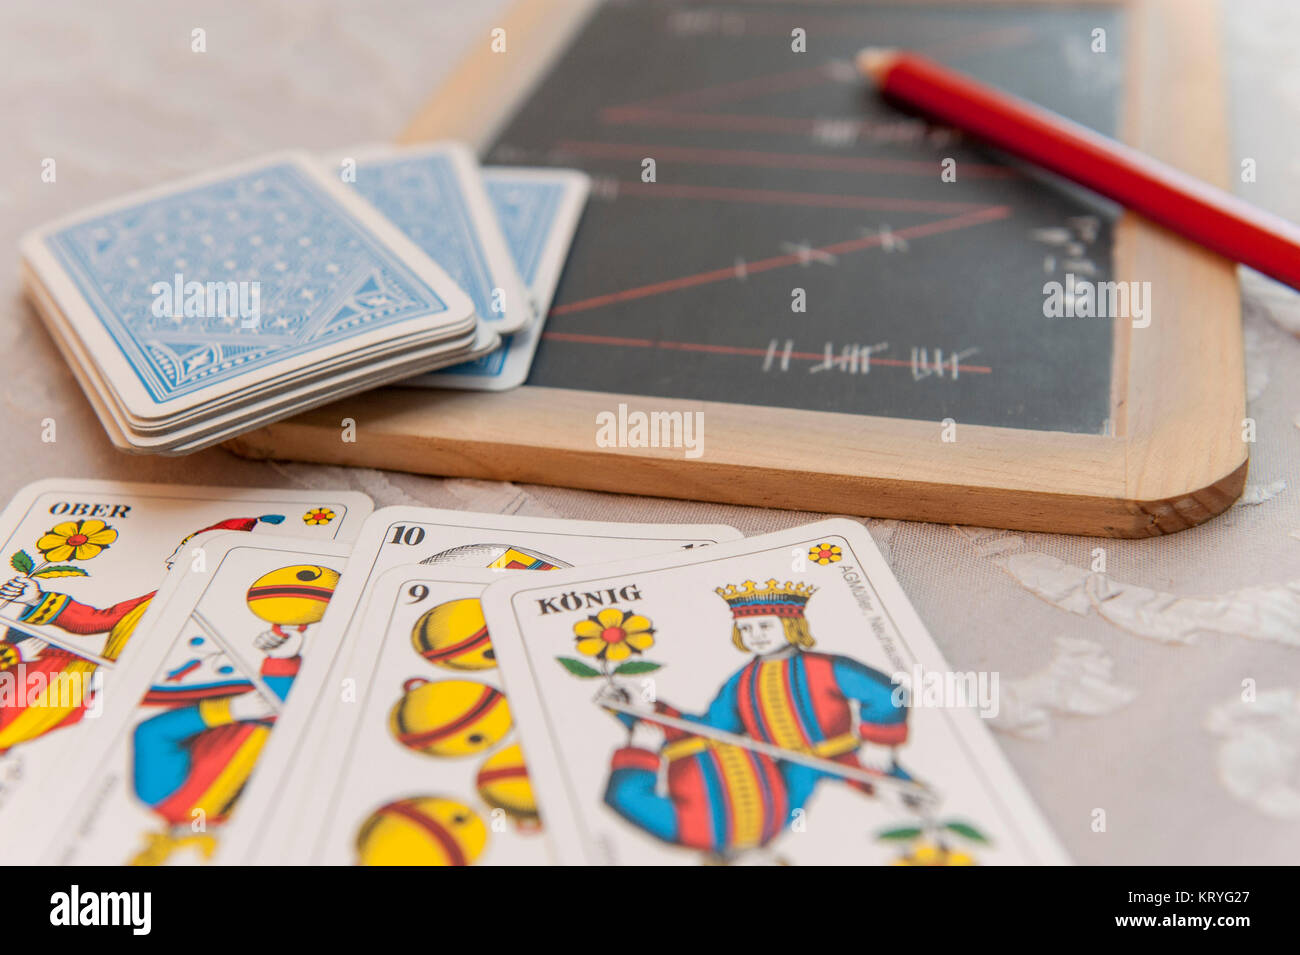 Jasskarten, schweizer Kartenspiel - Schweizer kard Spiel, Yass  Stockfotografie - Alamy